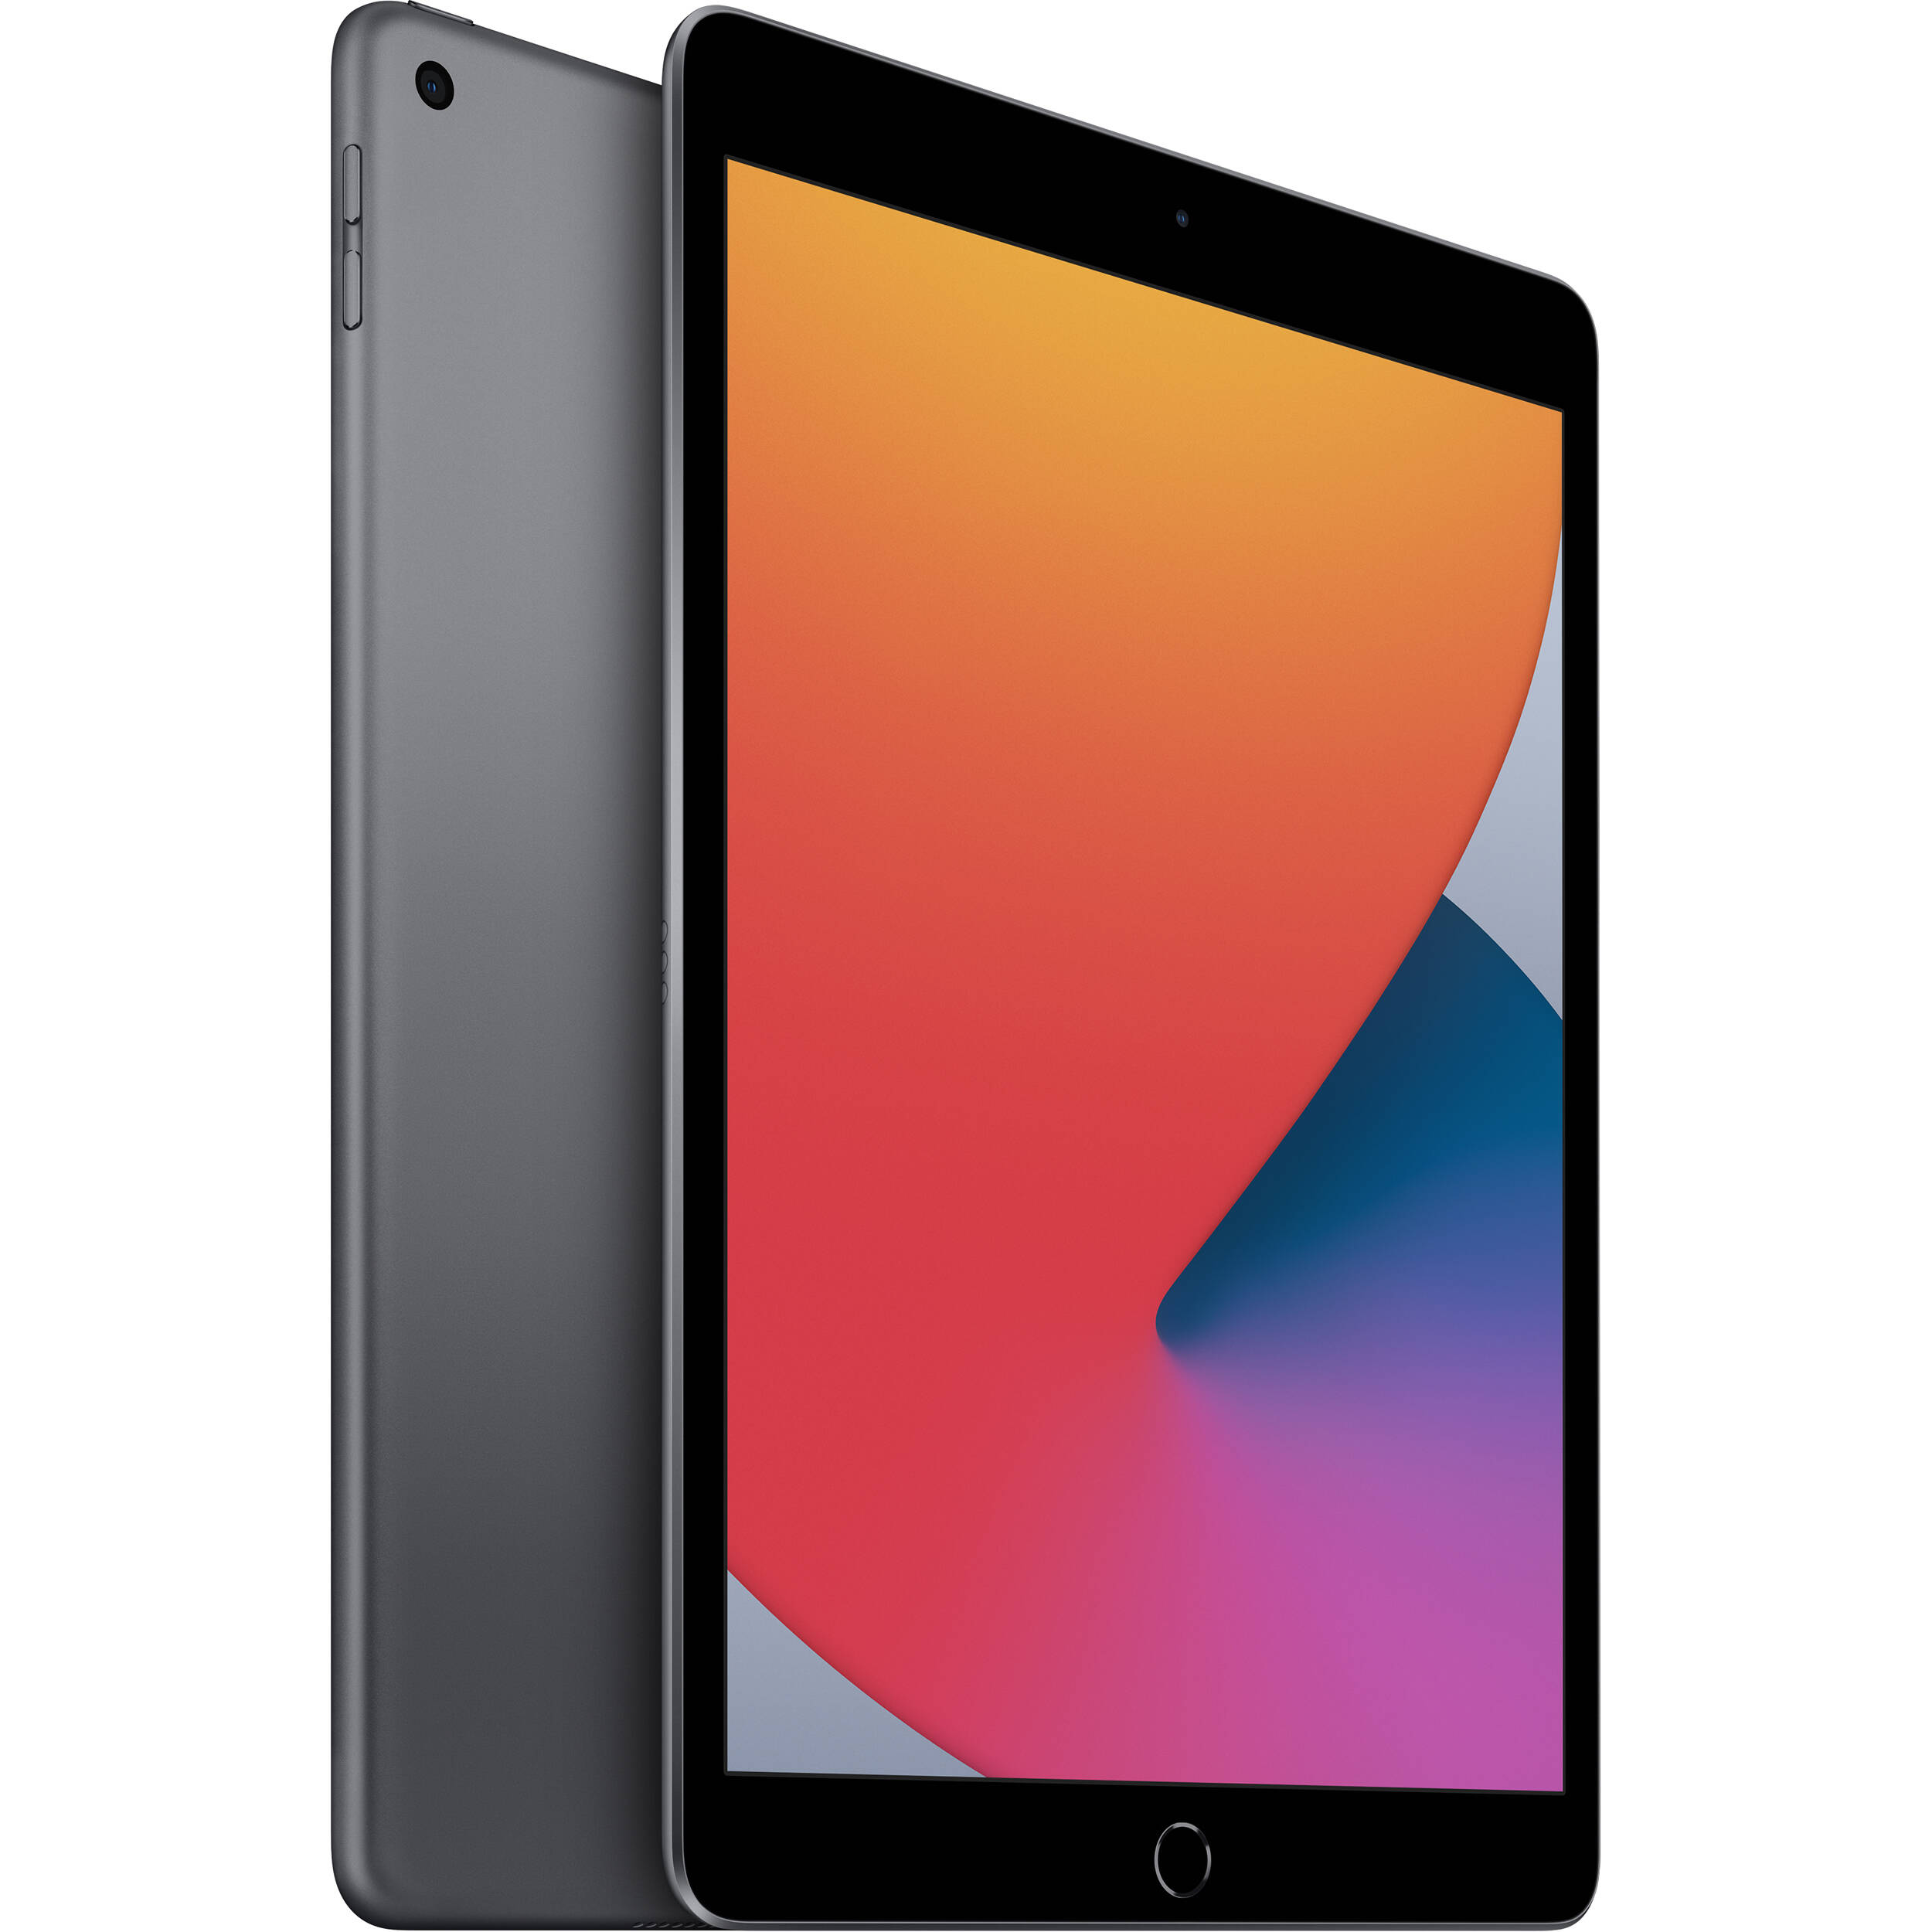 تبلت اپل مدل iPad 10.2 inch 2020 WiFi ظرفیت 128 گیگابایت